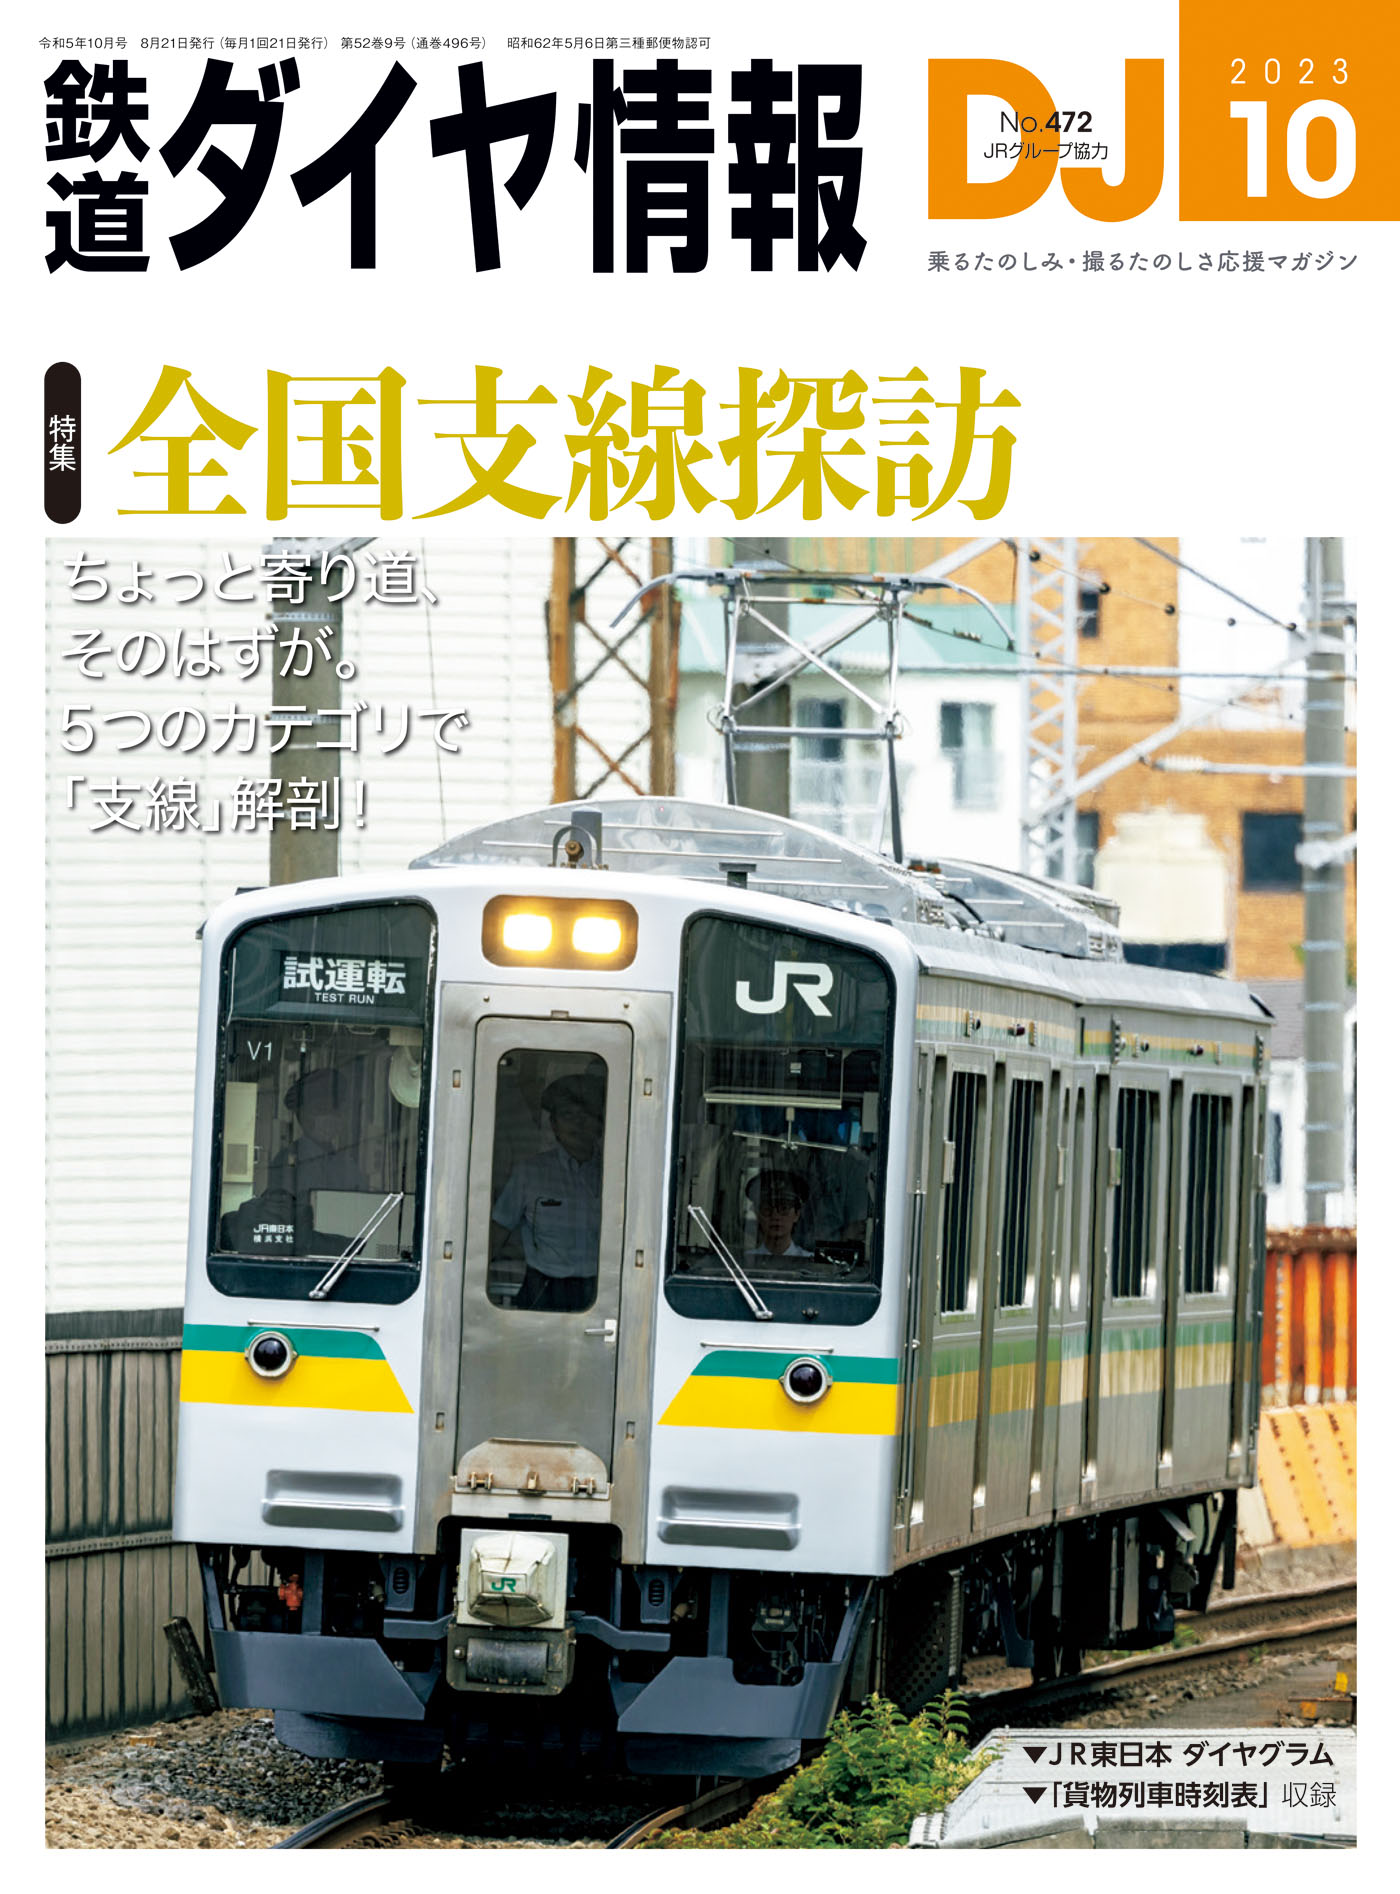 JR相模線 橋本駅 ホーム4番線時刻表 2010年 - 大阪府のその他